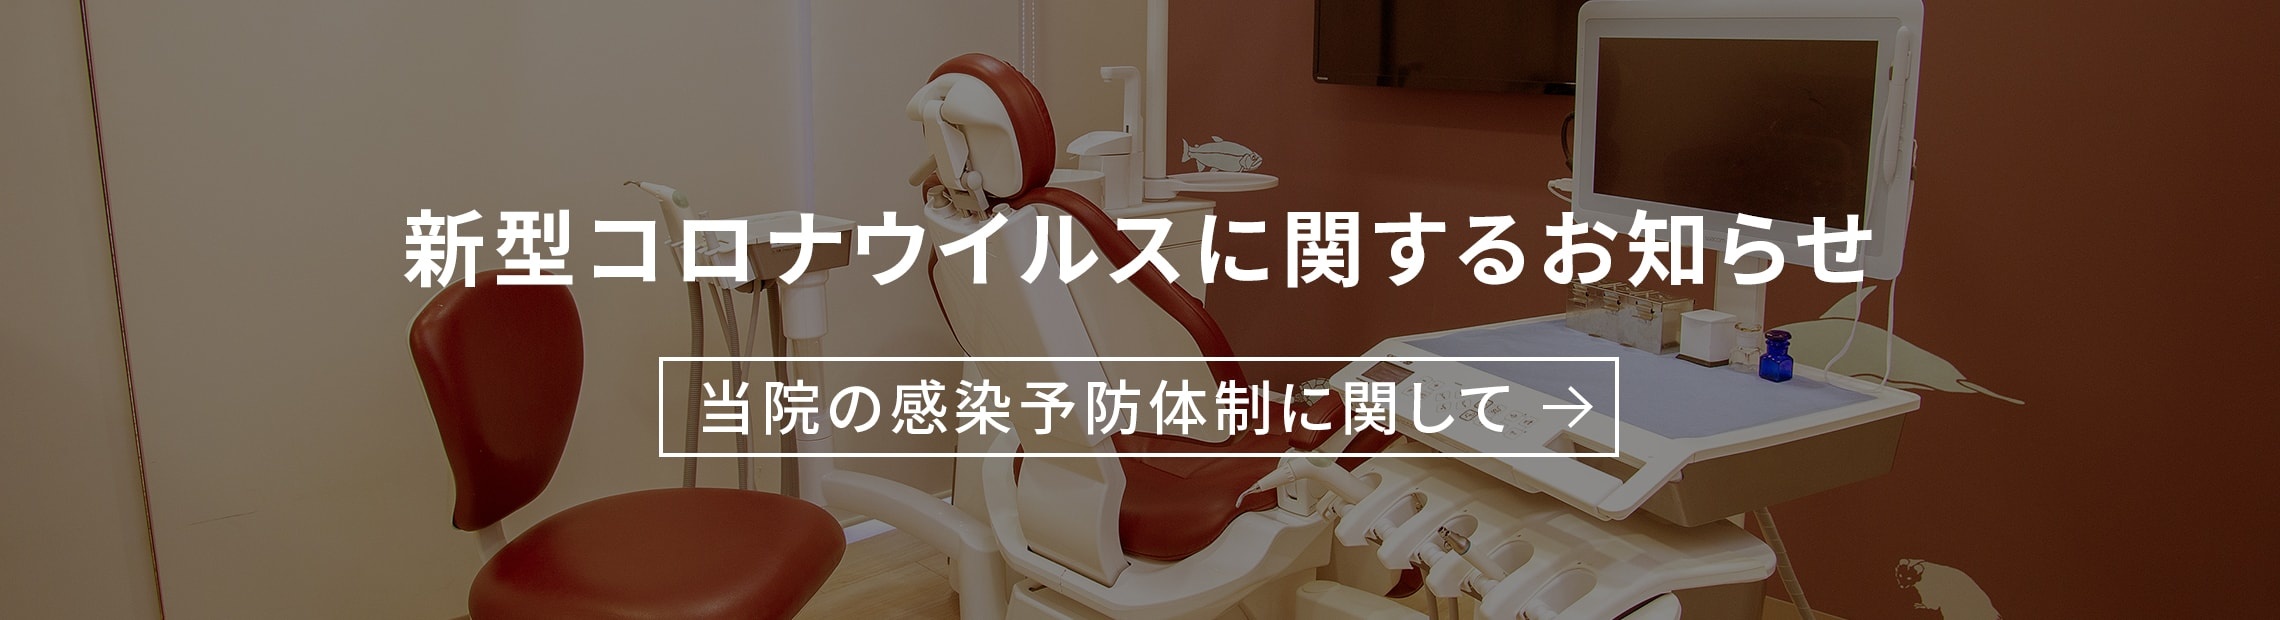 名古屋市南区 道徳駅近く 1日80名が来院する歯医者 なみき通り歯科